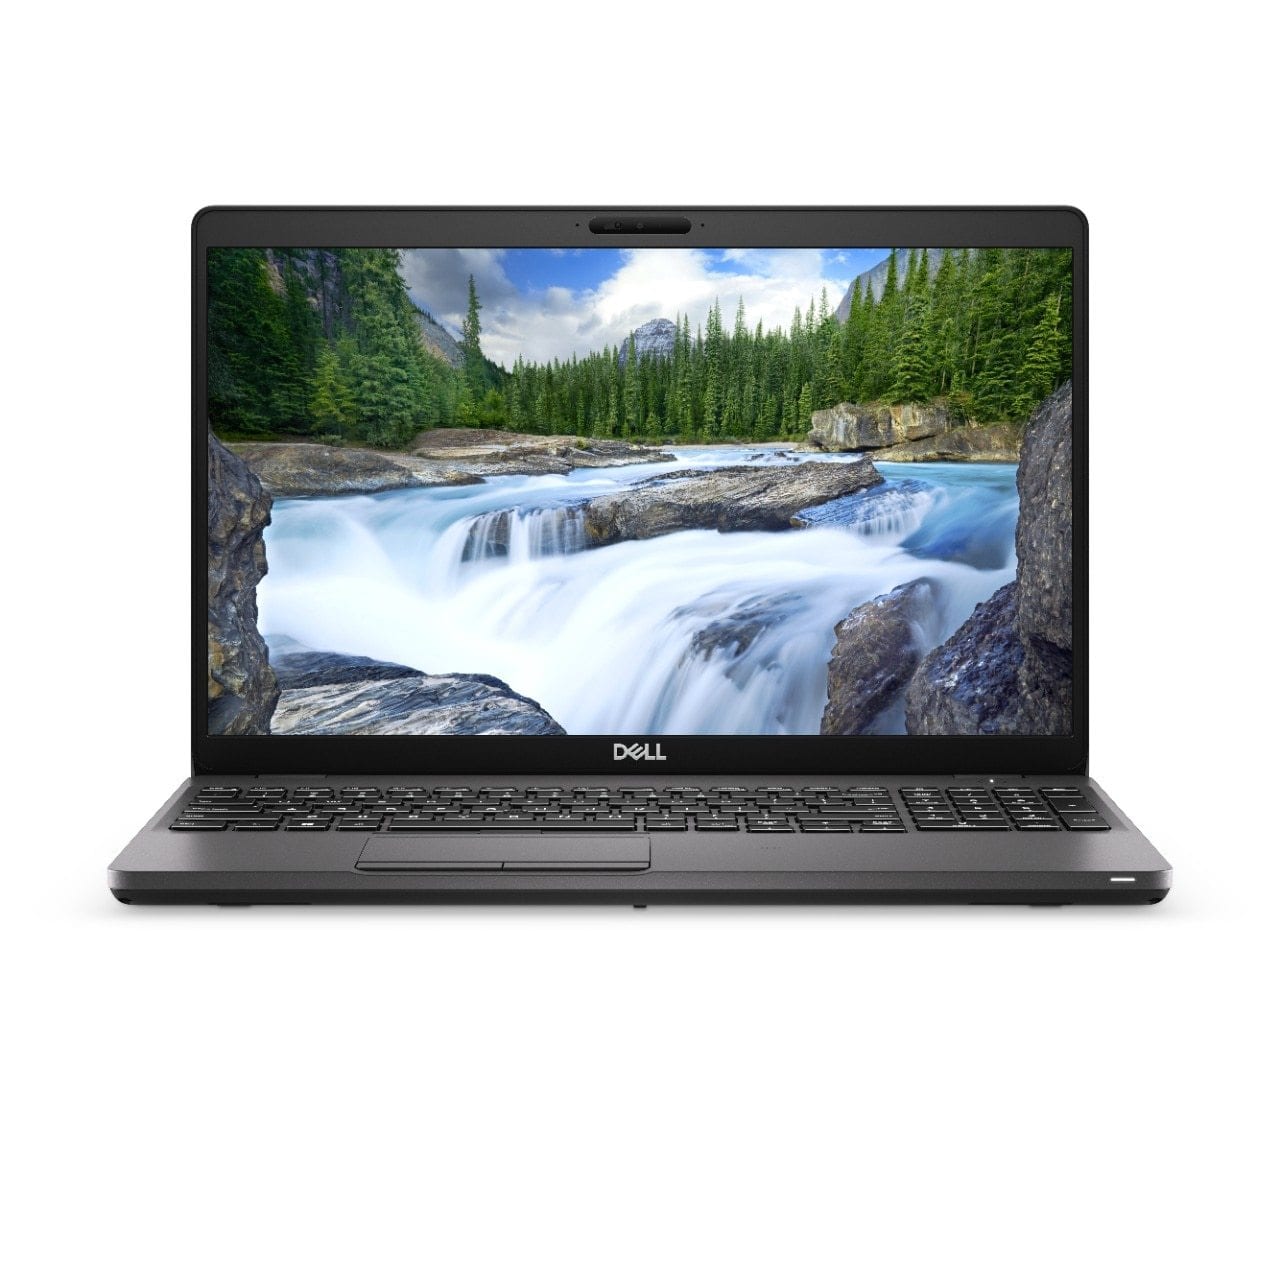 BSB-Y21HNPBOWQUQIVMA-NEW-NEW-LAP-DL 2019 Dell Latitude 5500 Laptop 15.6" - i7 - i7-8665U - Quad Core 4.8Ghz - 512GB SSD - 16GB RAM - 1920x1080 FHD - Windows 10 Pro Black